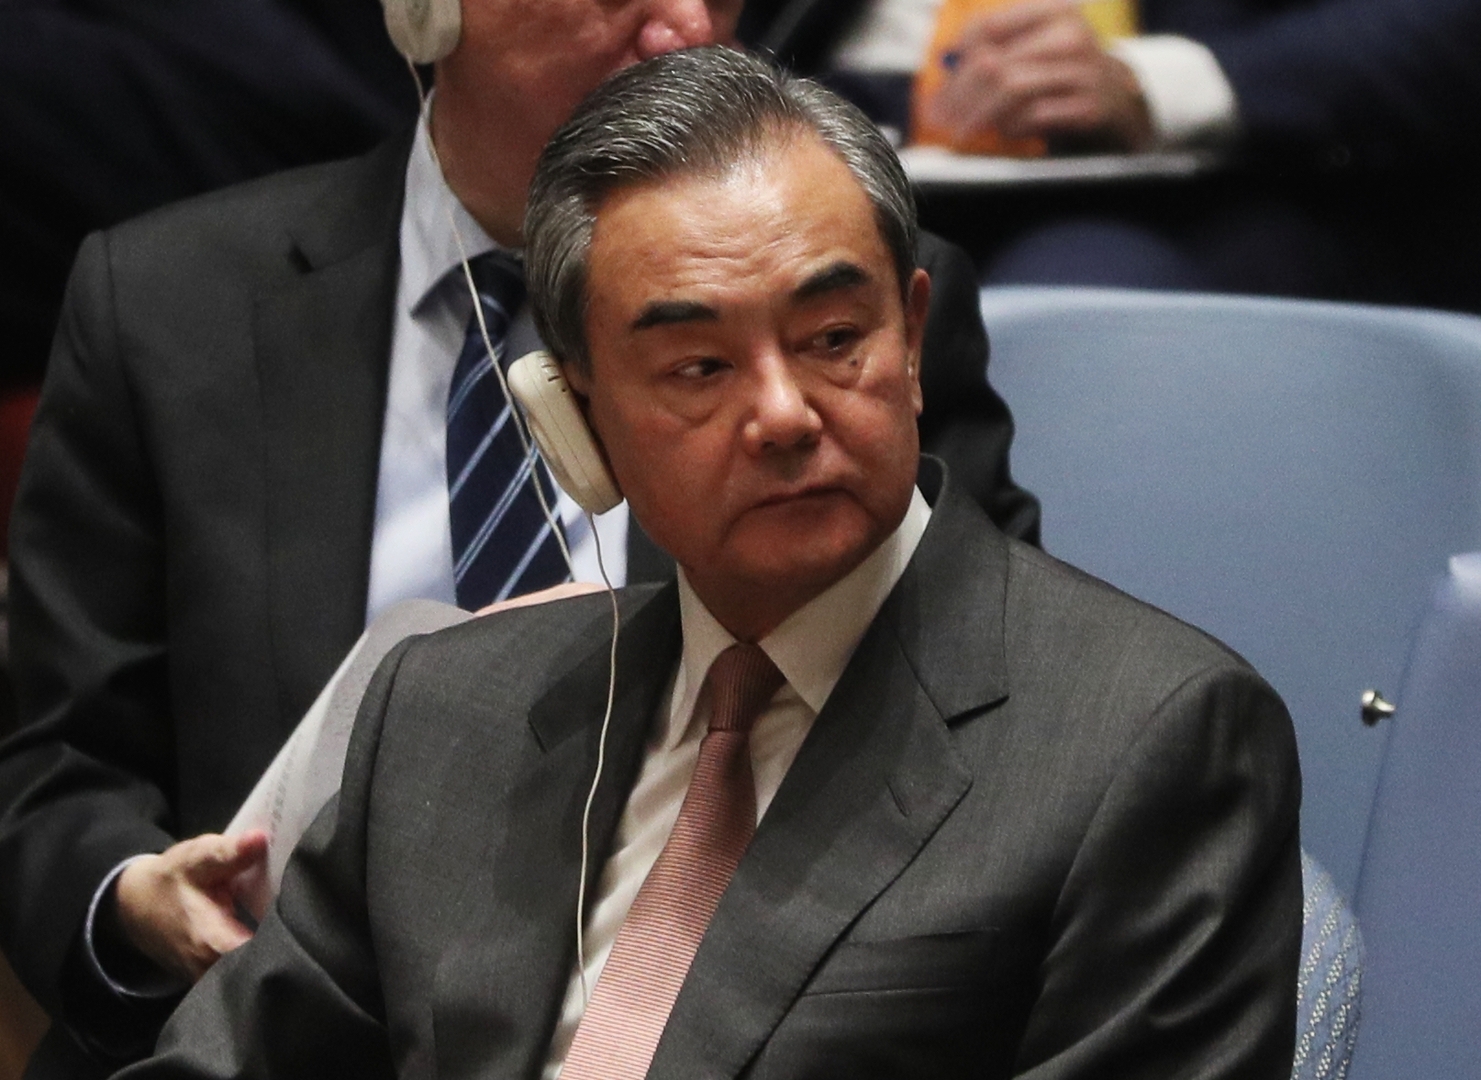 وزير الخارجية الصيني يدعو إلى عدم صب الزيت على النار في أوكرانيا